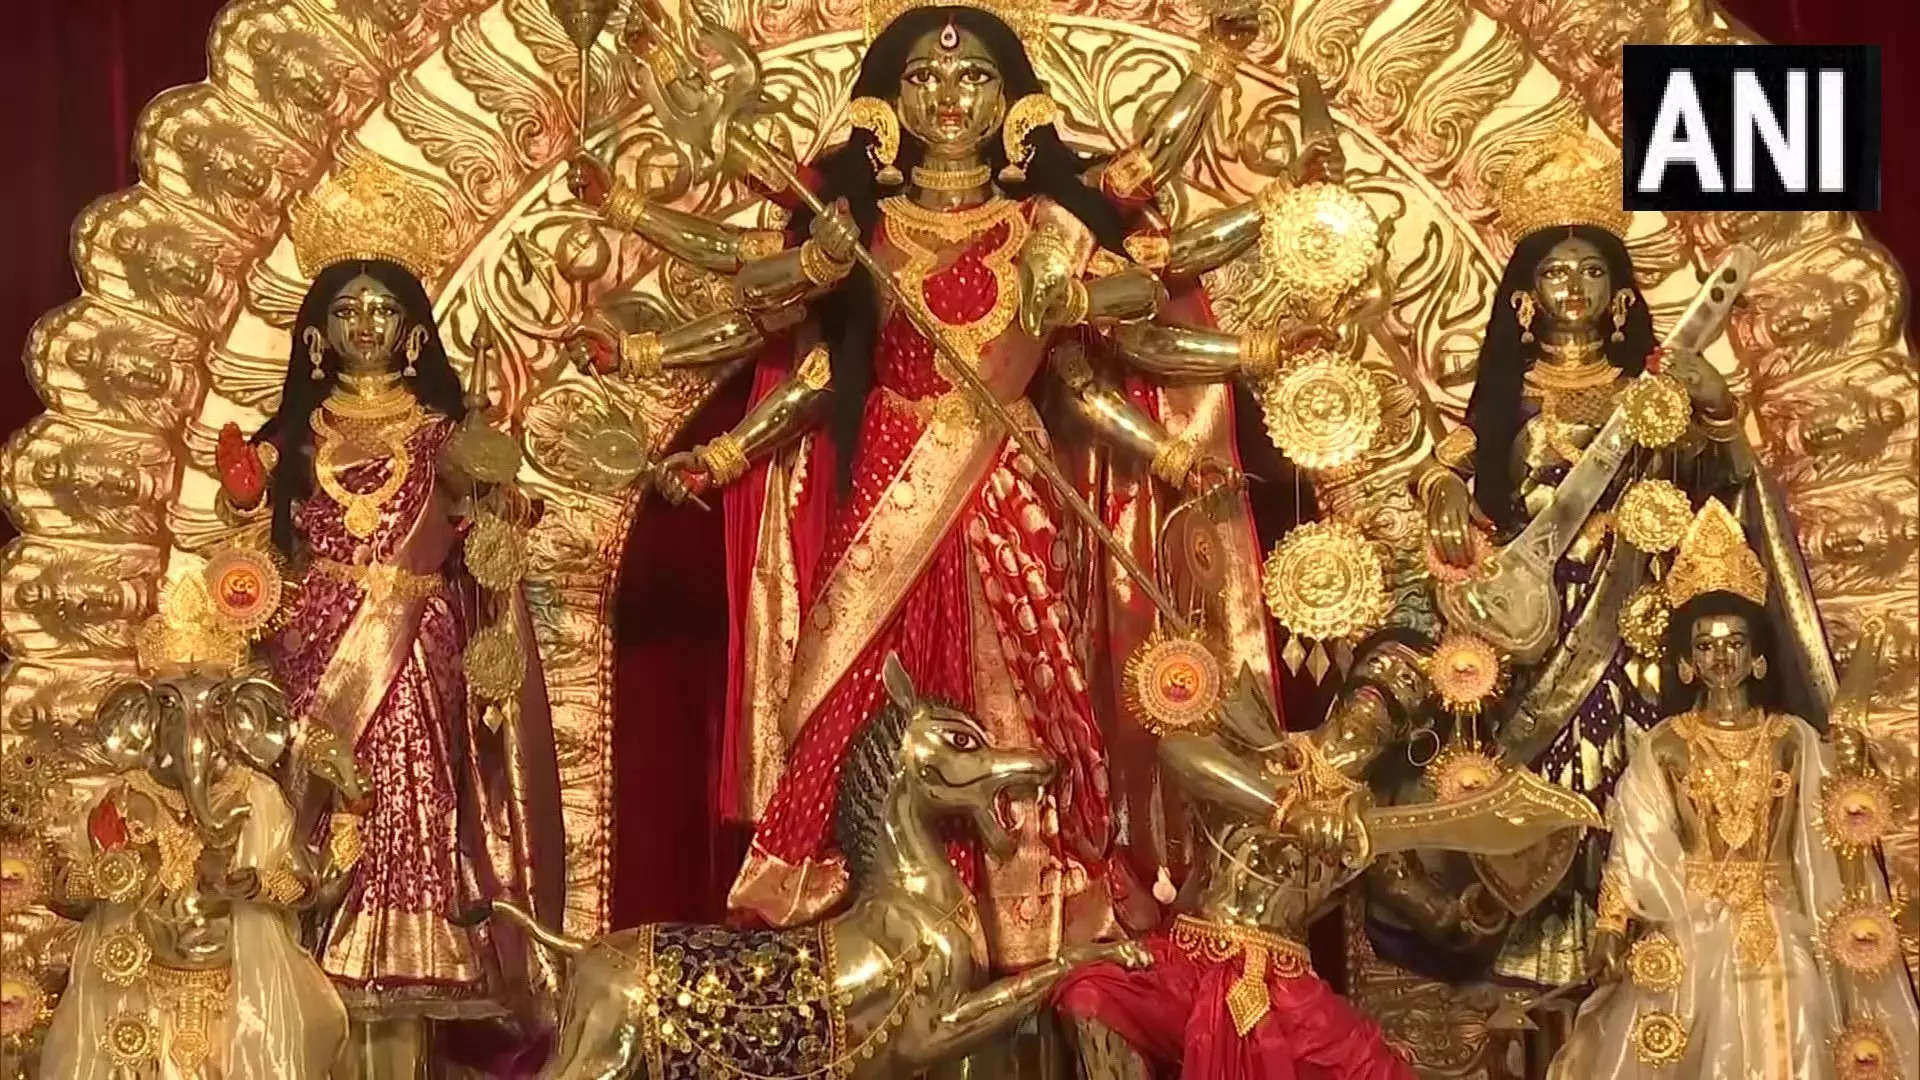 Kolkata Durga Puja Pandal: 11 feet Ashtadhatu Durga weighing 1,000 kg  installed in North Kolkata pandal